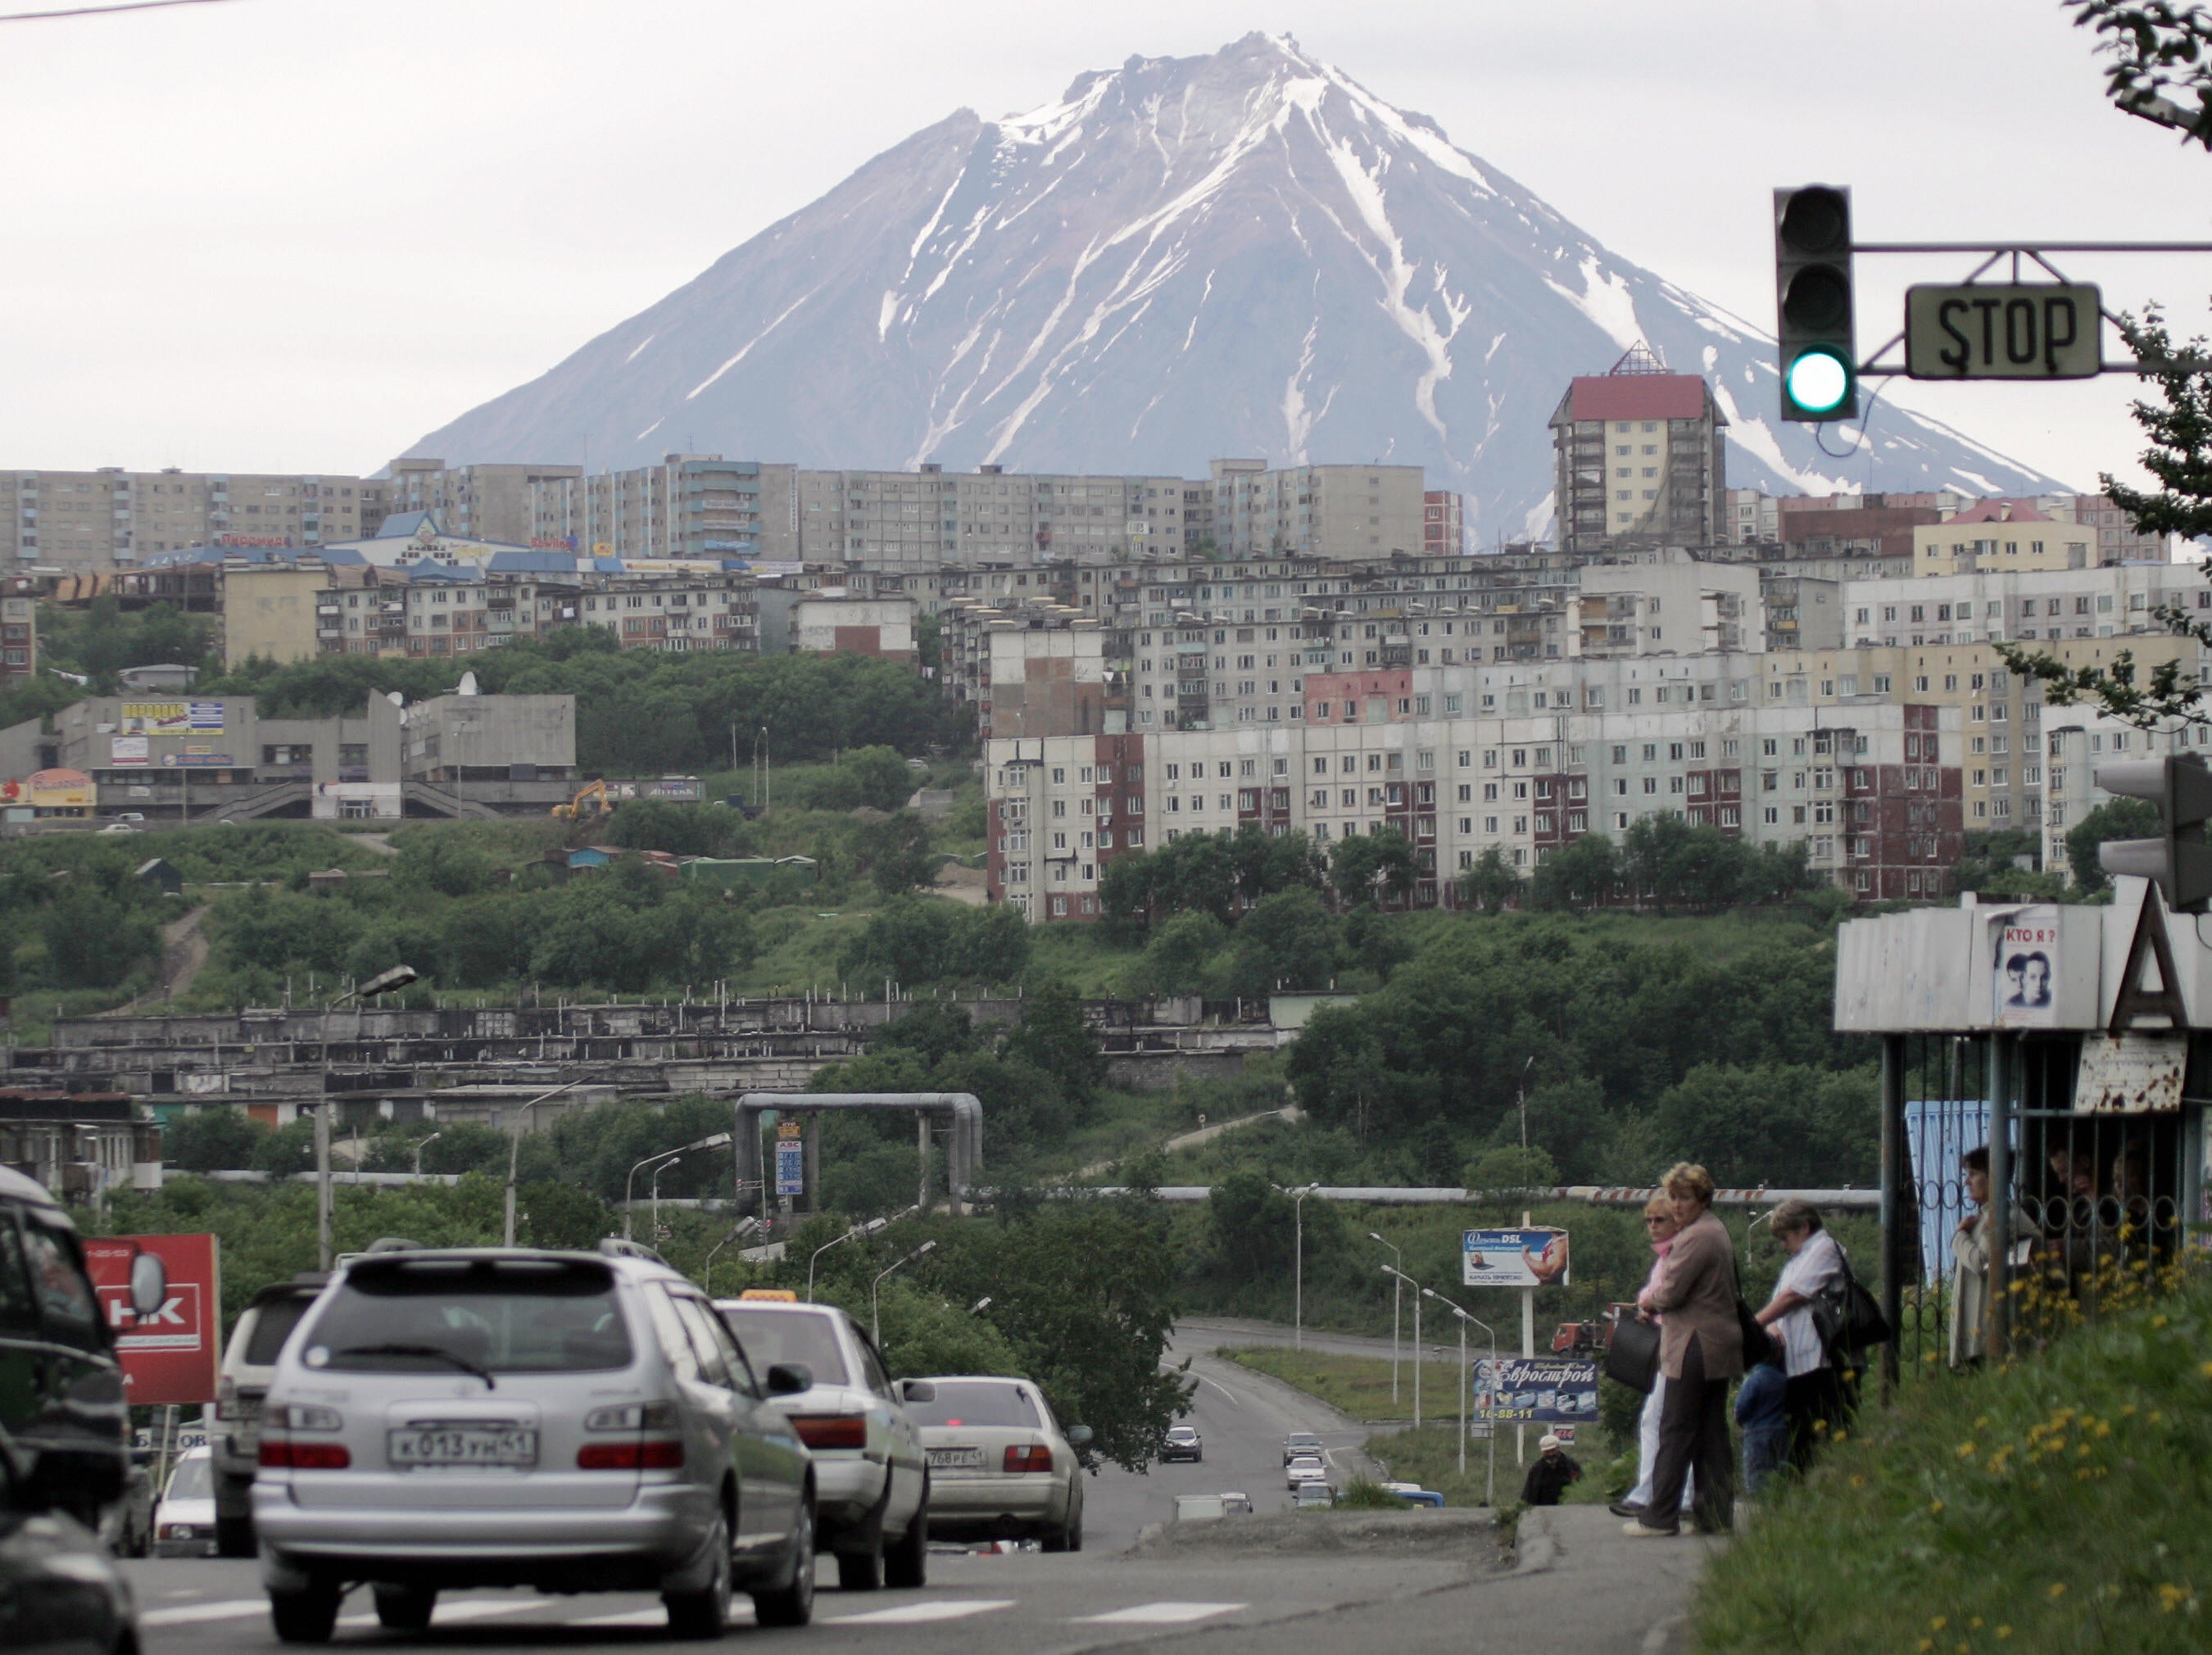 File photo shows a view of Petropavlovsk-Kamchatsky city with Klyuchevskaya Sopka mountain on the background